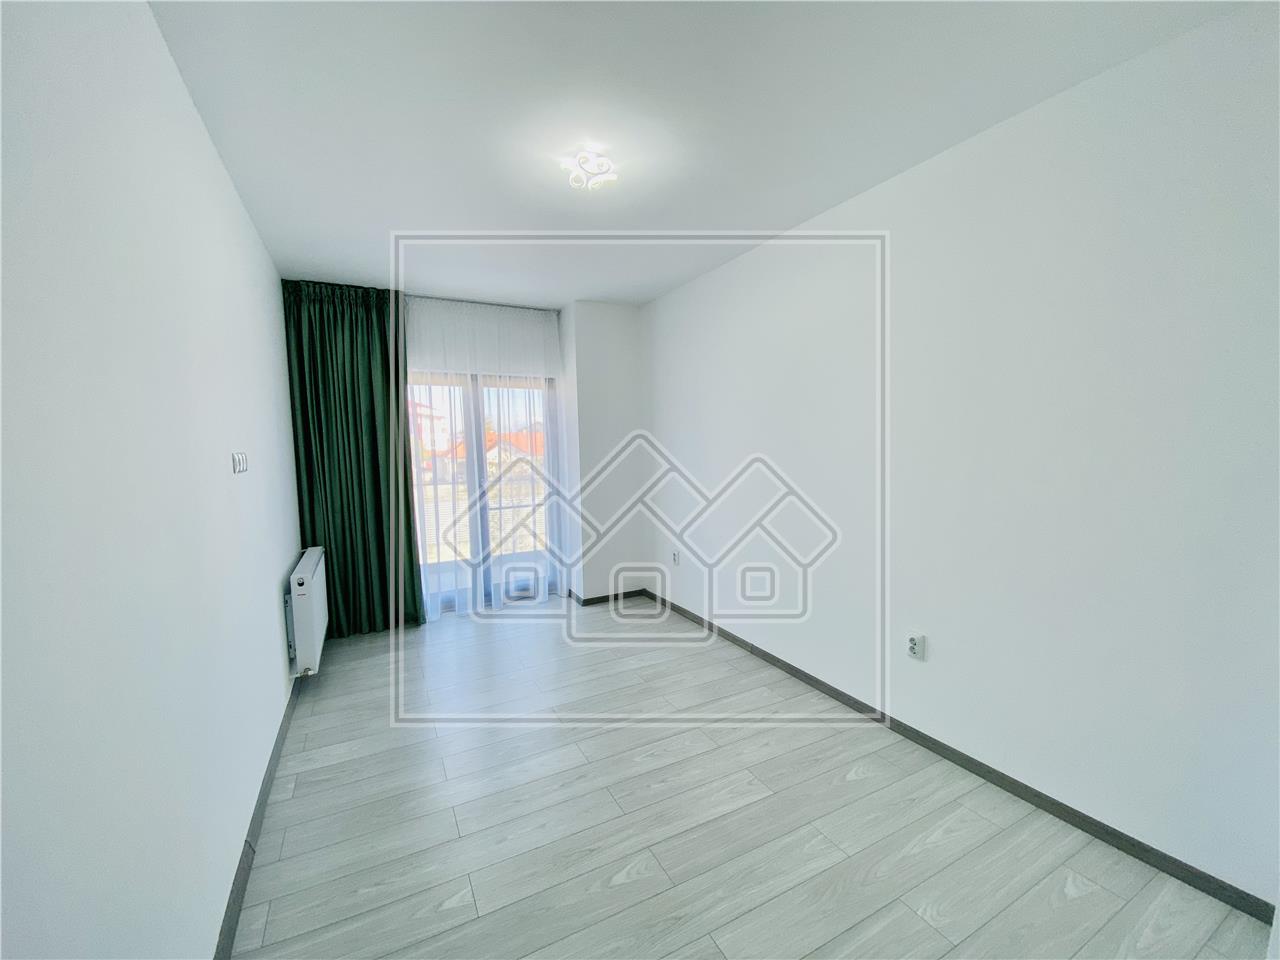 Apartament de vanzare in Sibiu-3 camere, balcon mare-parcare subterana